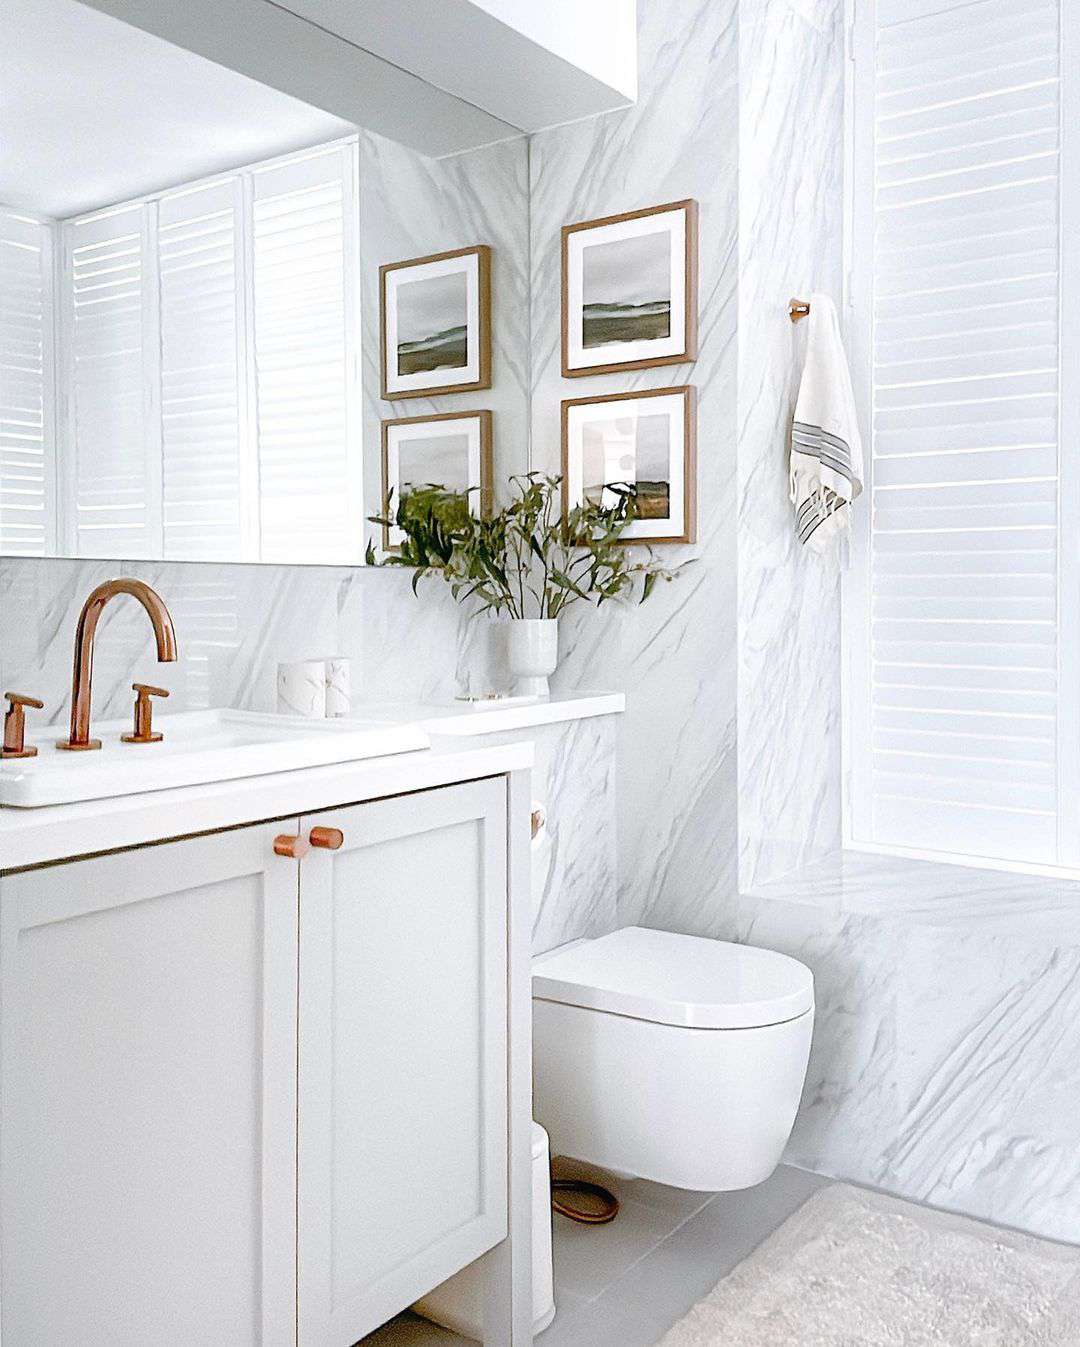 Salle de bains blanche et lumineuse avec fenêtre à volets intégrée pour plus d'intimité.